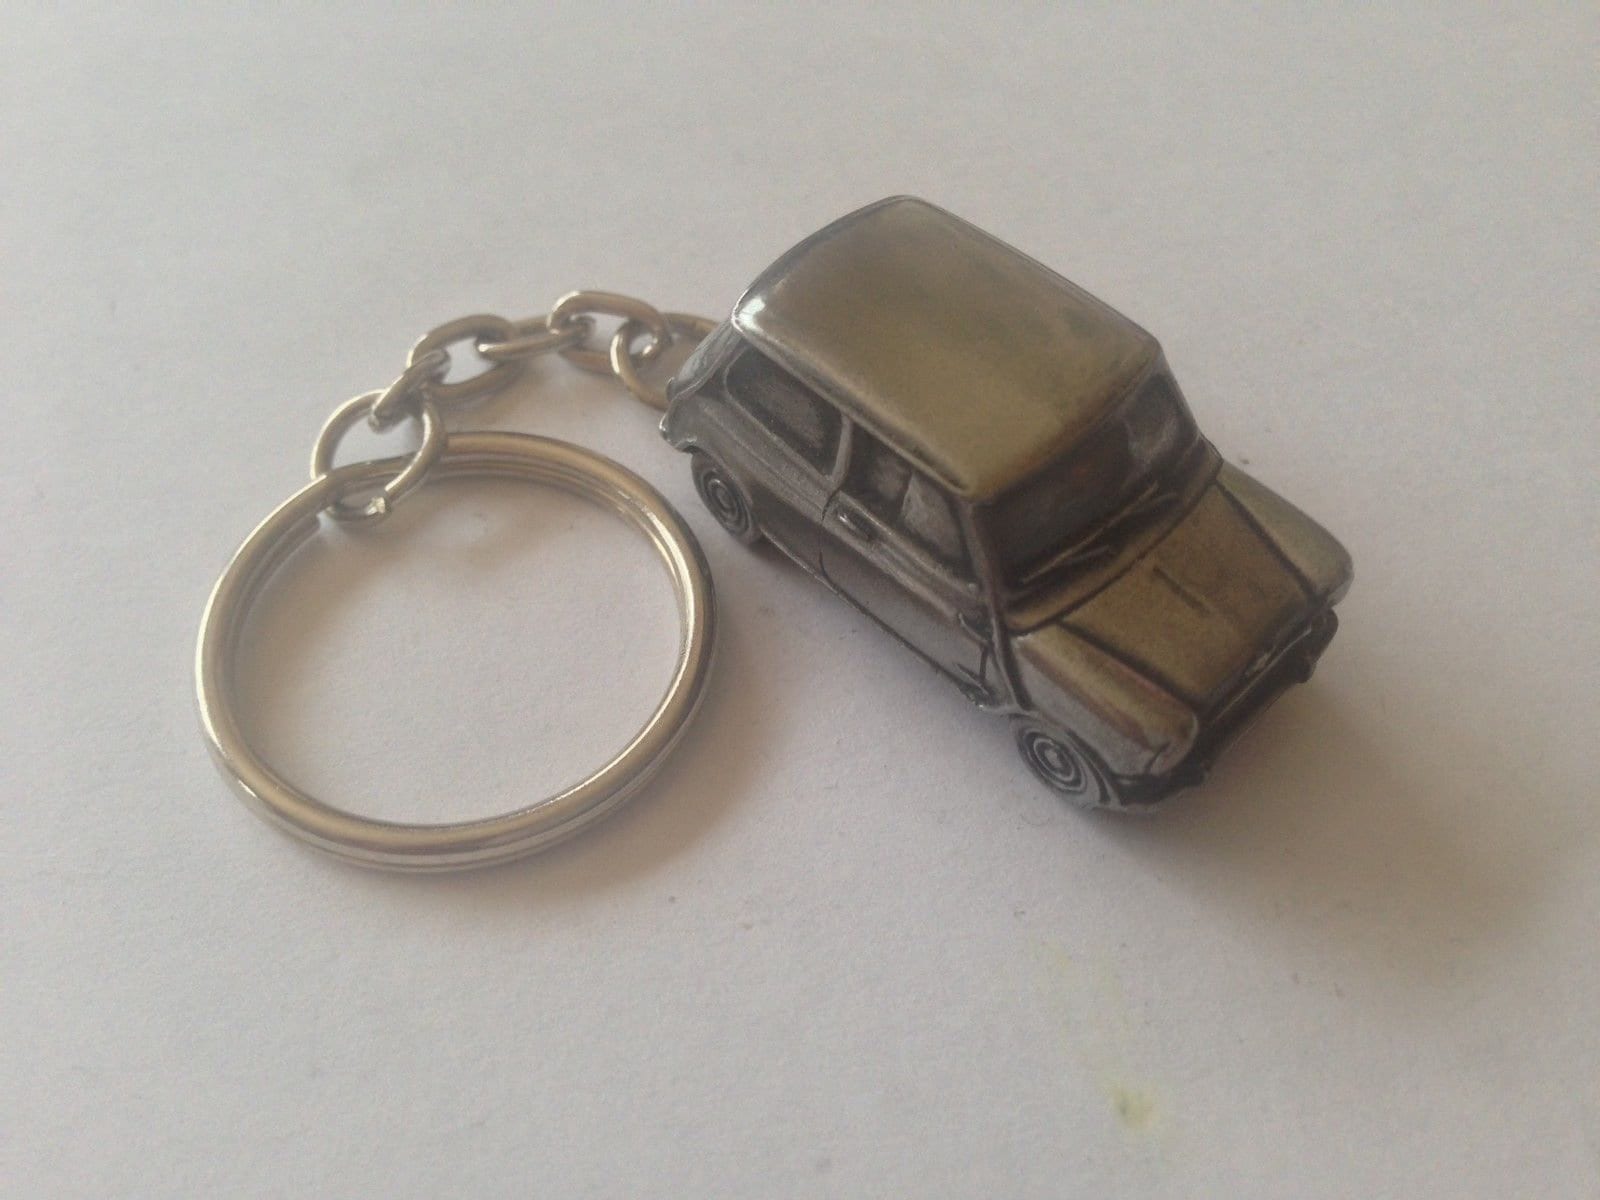 Handgemachte Designer Metall Logo Mini Cooper Keychain Geschenk